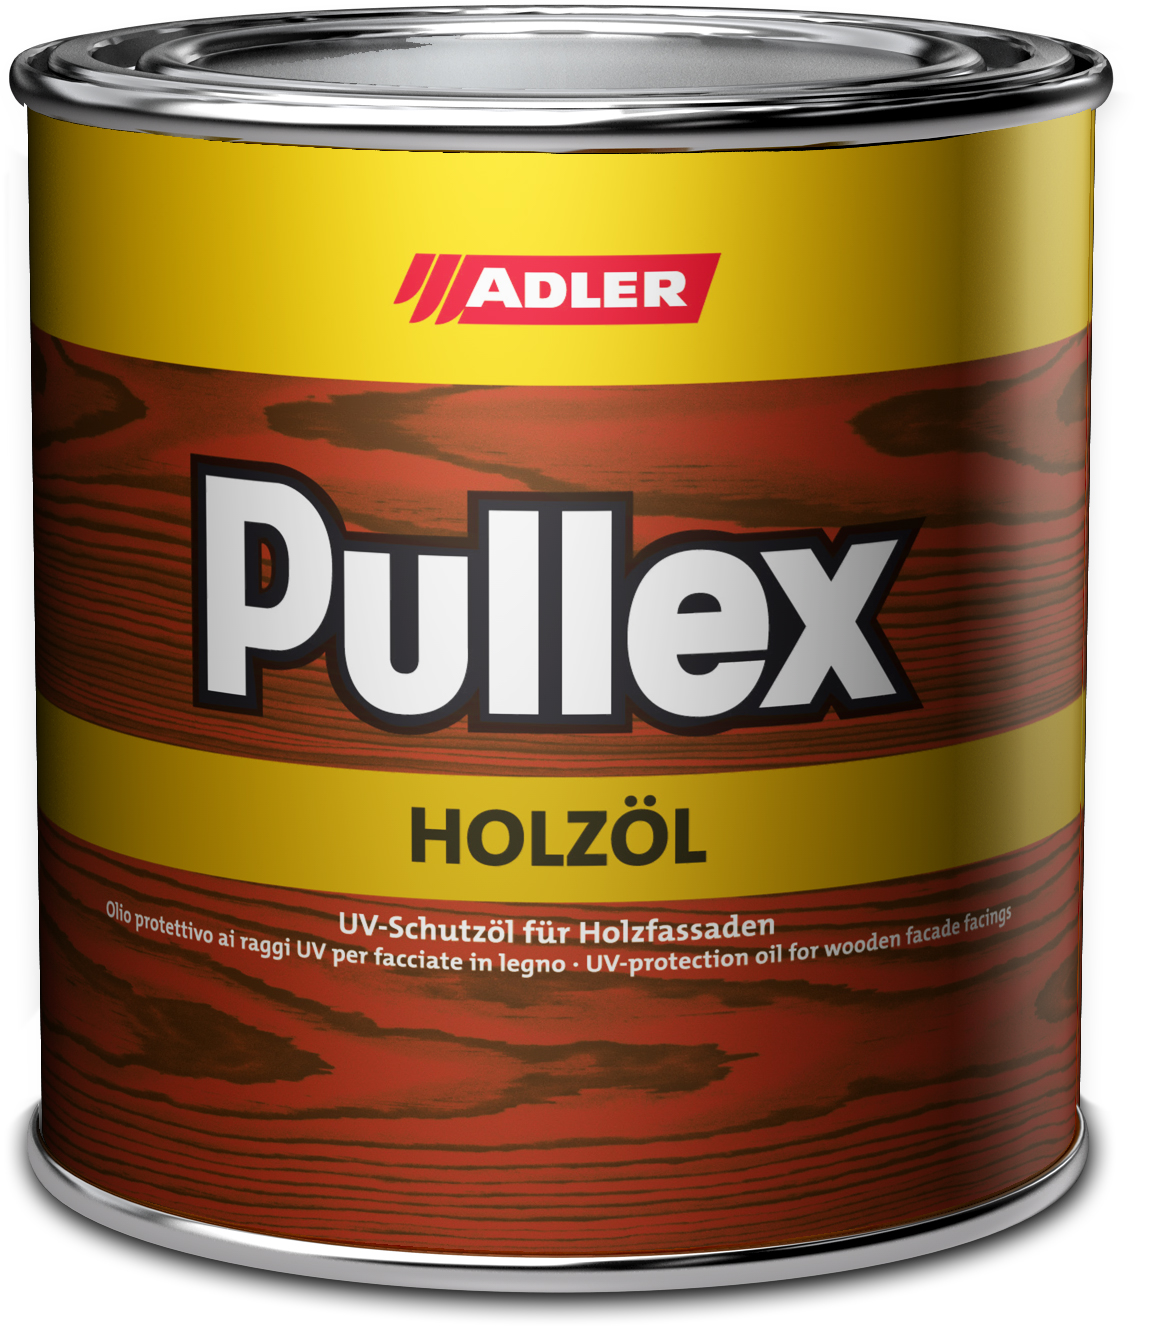 Adler Pullex Holzöl Farblos,10L